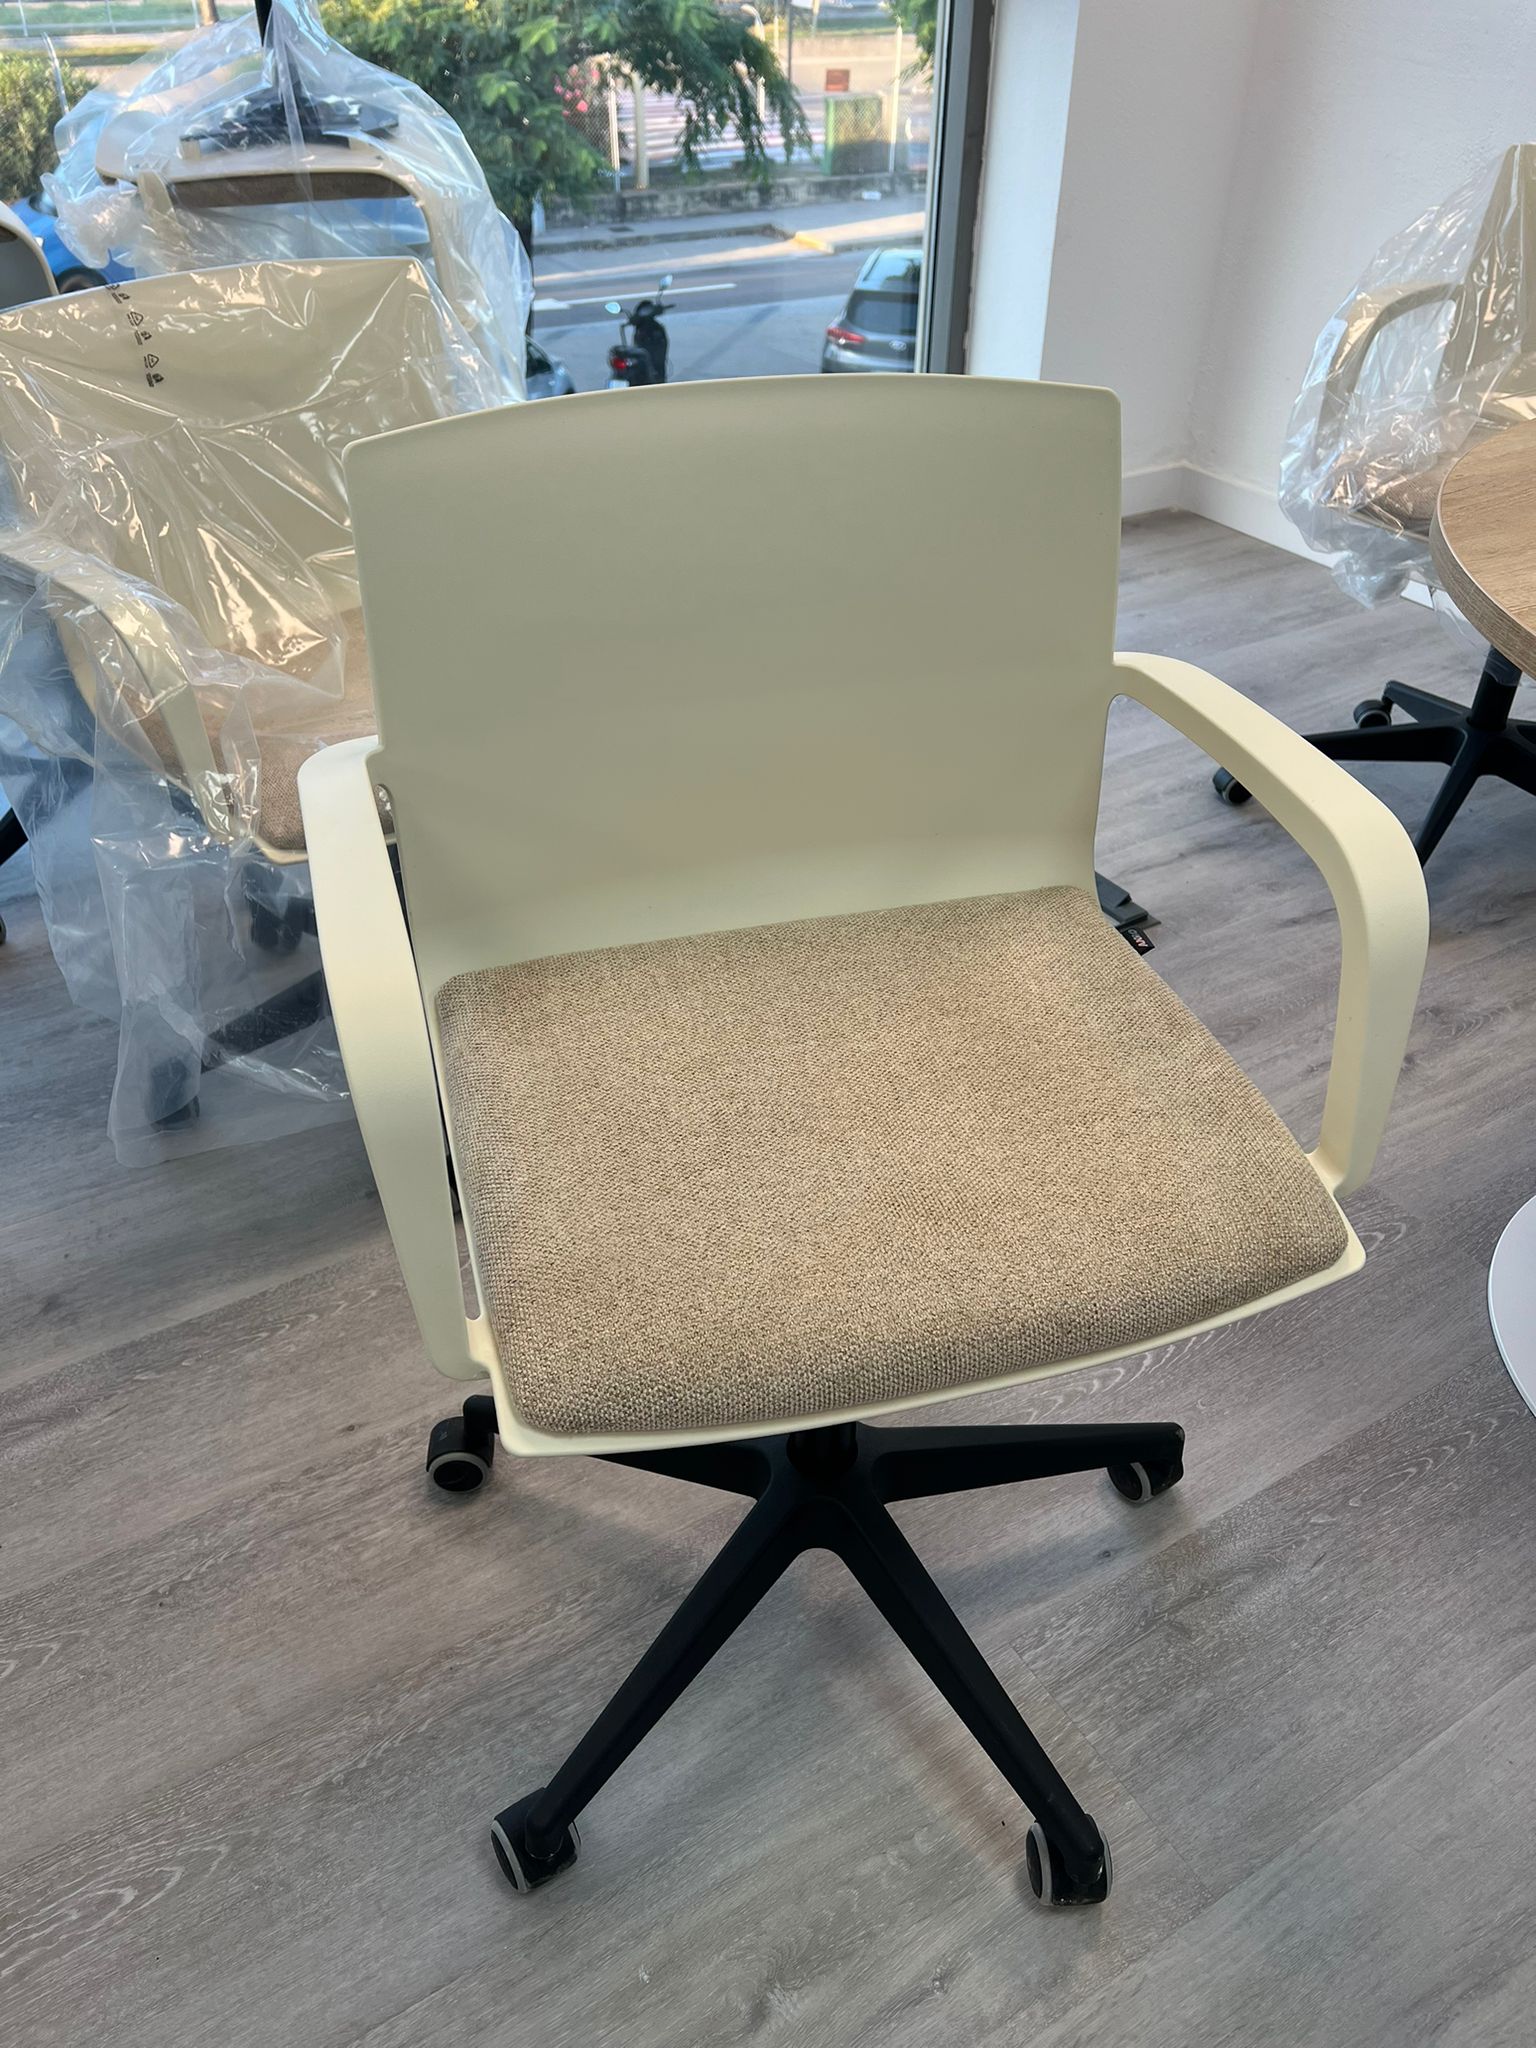 La importancia de contar con sillas de oficina de calidad